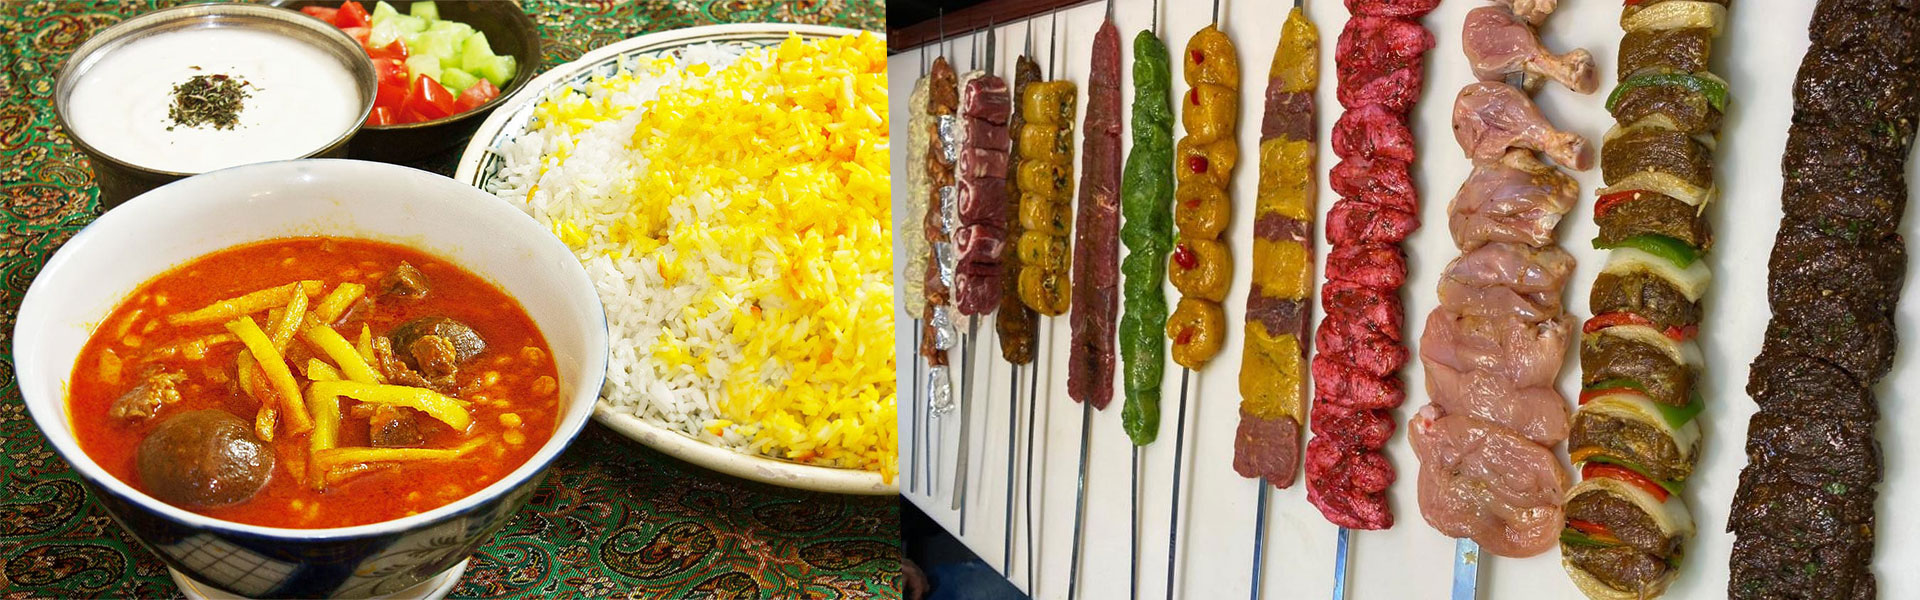 آشپزی ایرانی با غذاهای متنوع و دوست داشتنی